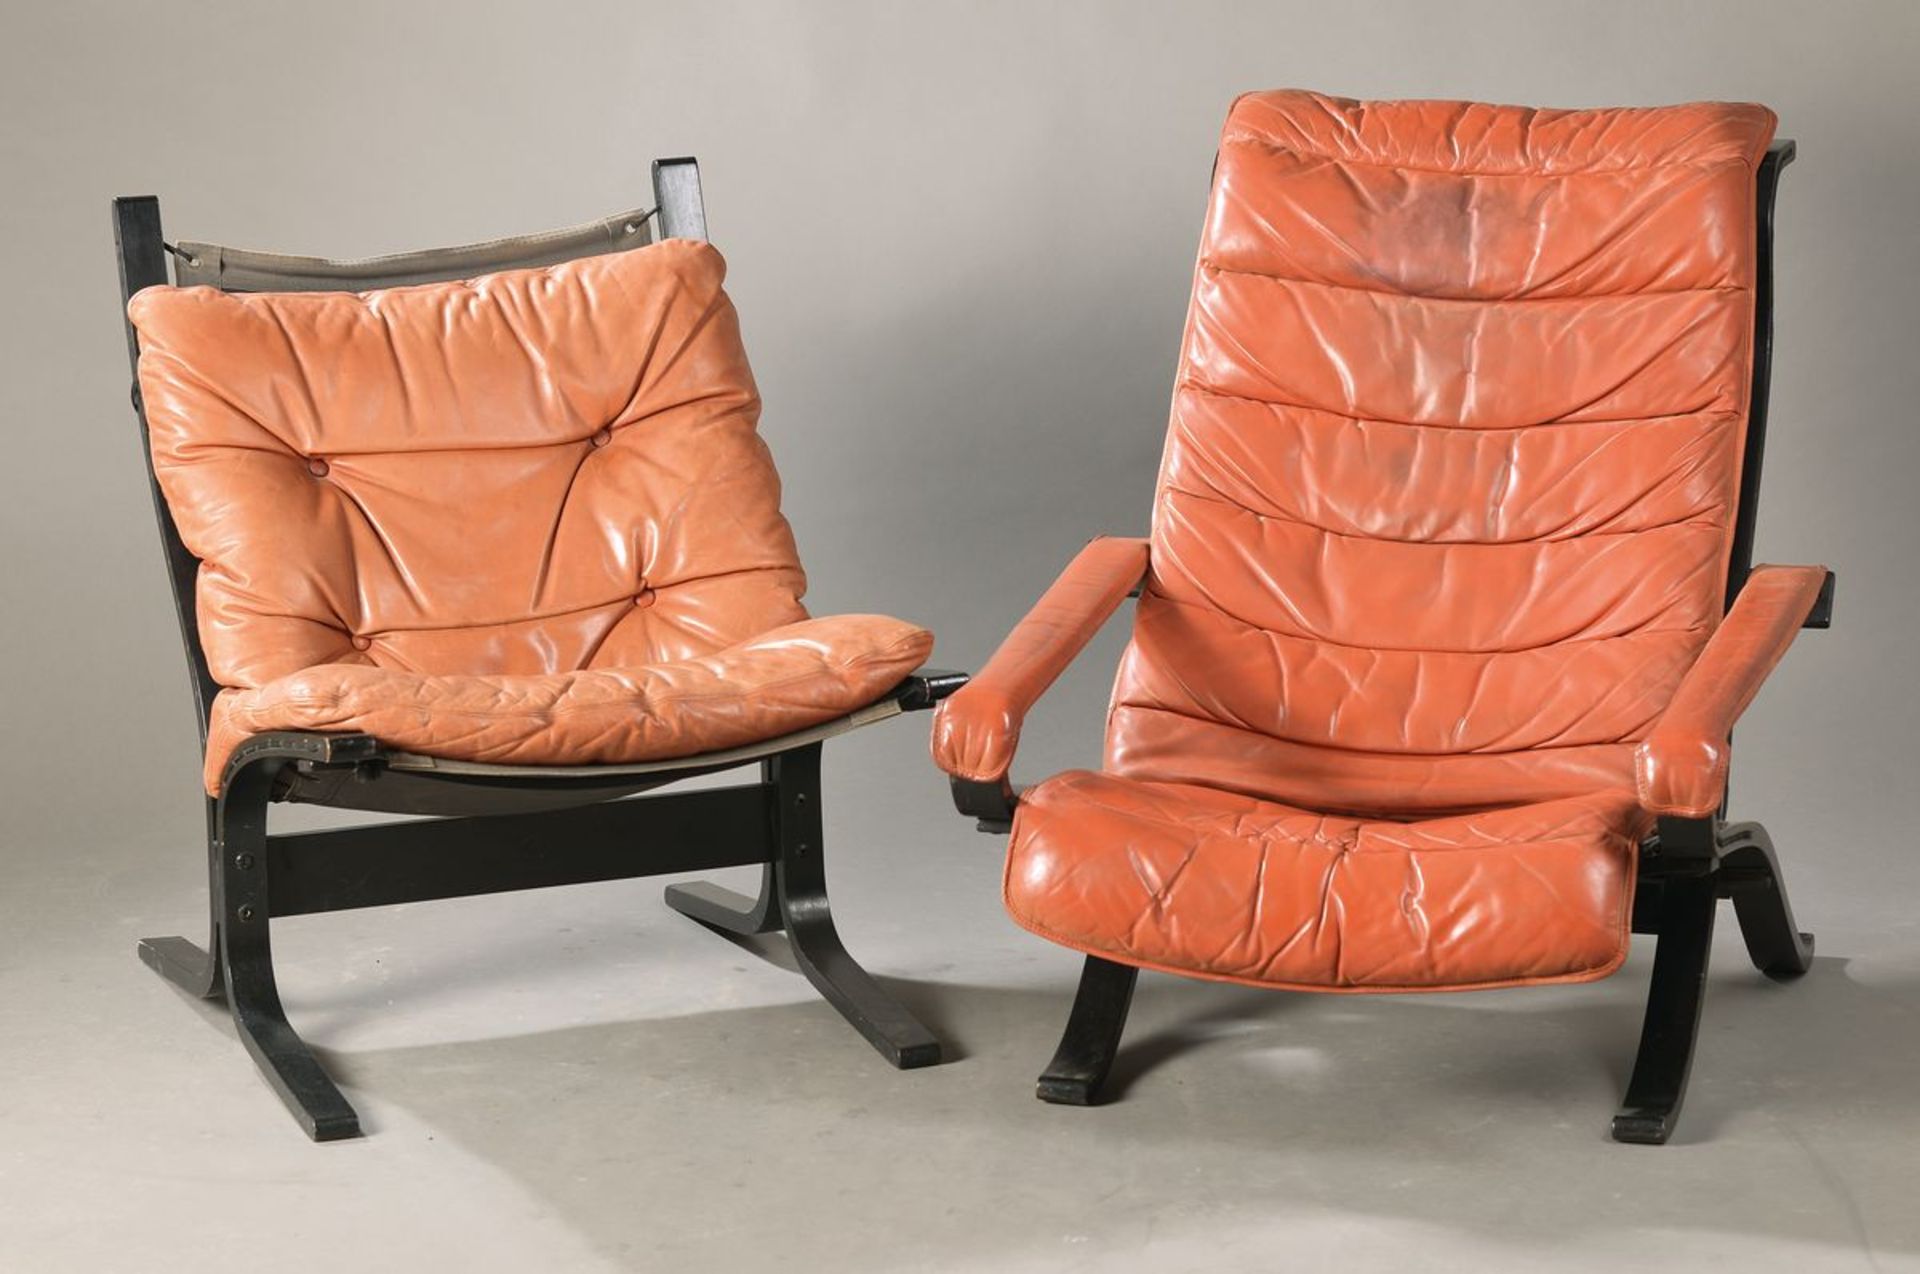 Vier Siesta-Sessel, Entwurf Ingmar Relling Norwegen, 1970er Jahre, roter genoppter LederbezugFour